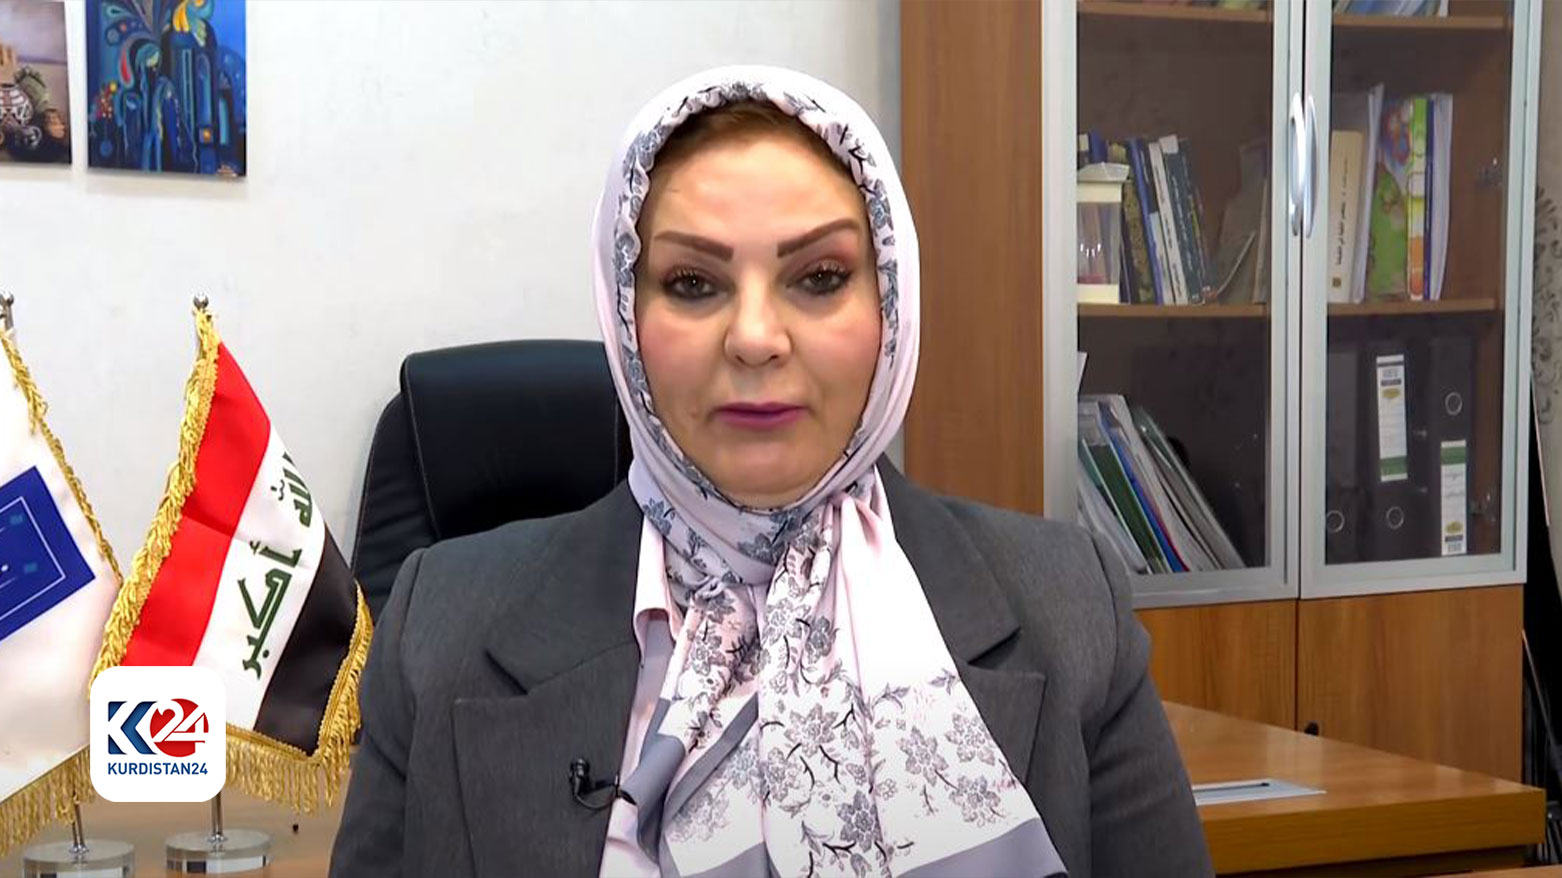 جومانة الغلاي: أكثر من 76 ألف ناخب في إقليم كوردستان سجلوا بياناتهم للحصول على البطاقة البايومترية